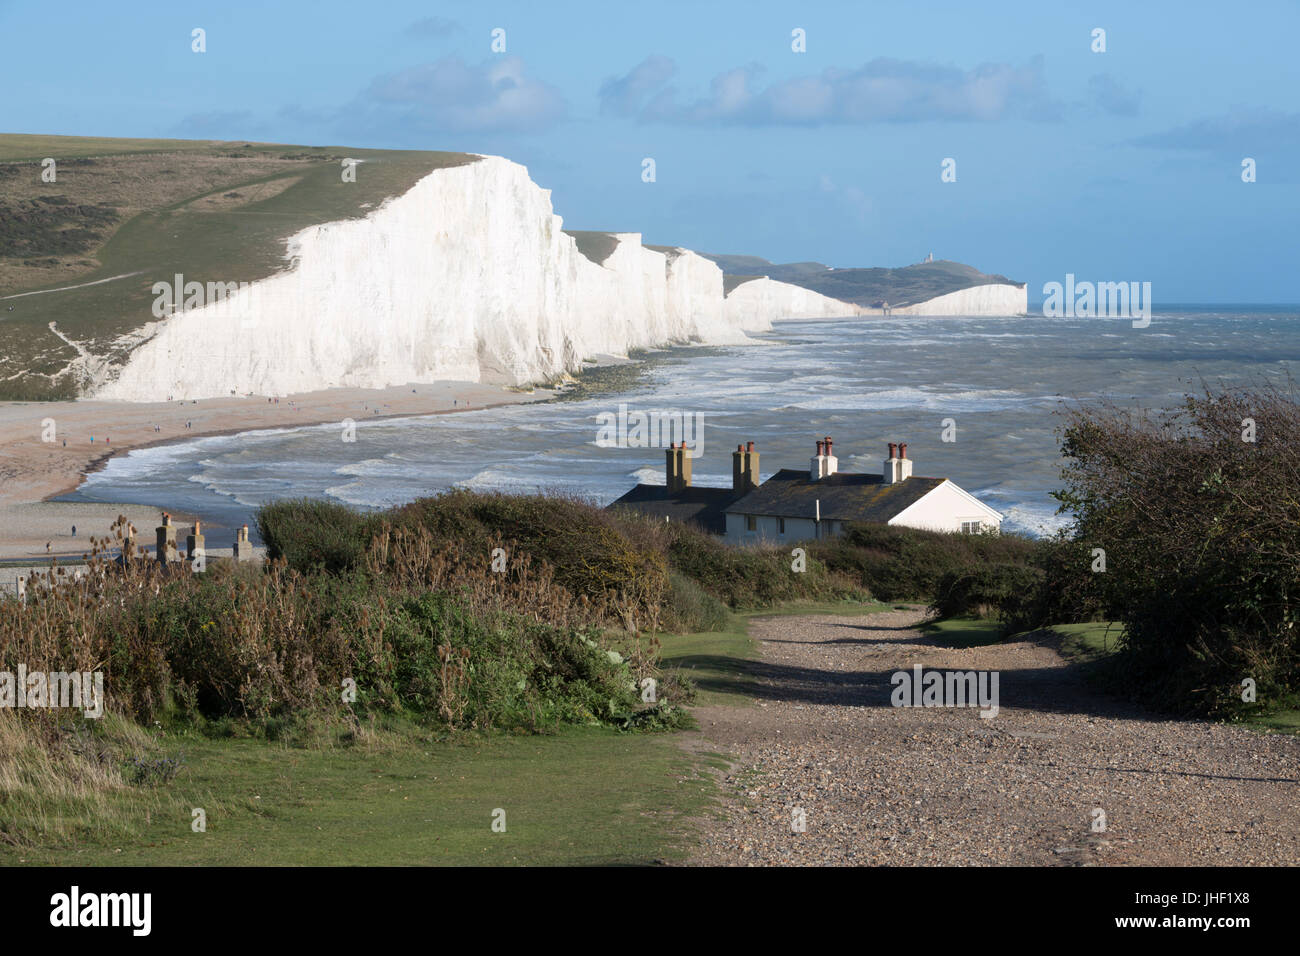 Sieben Schwestern und Beachy Head, Seaford, East Sussex, England, Vereinigtes Königreich, Europa Stockfoto